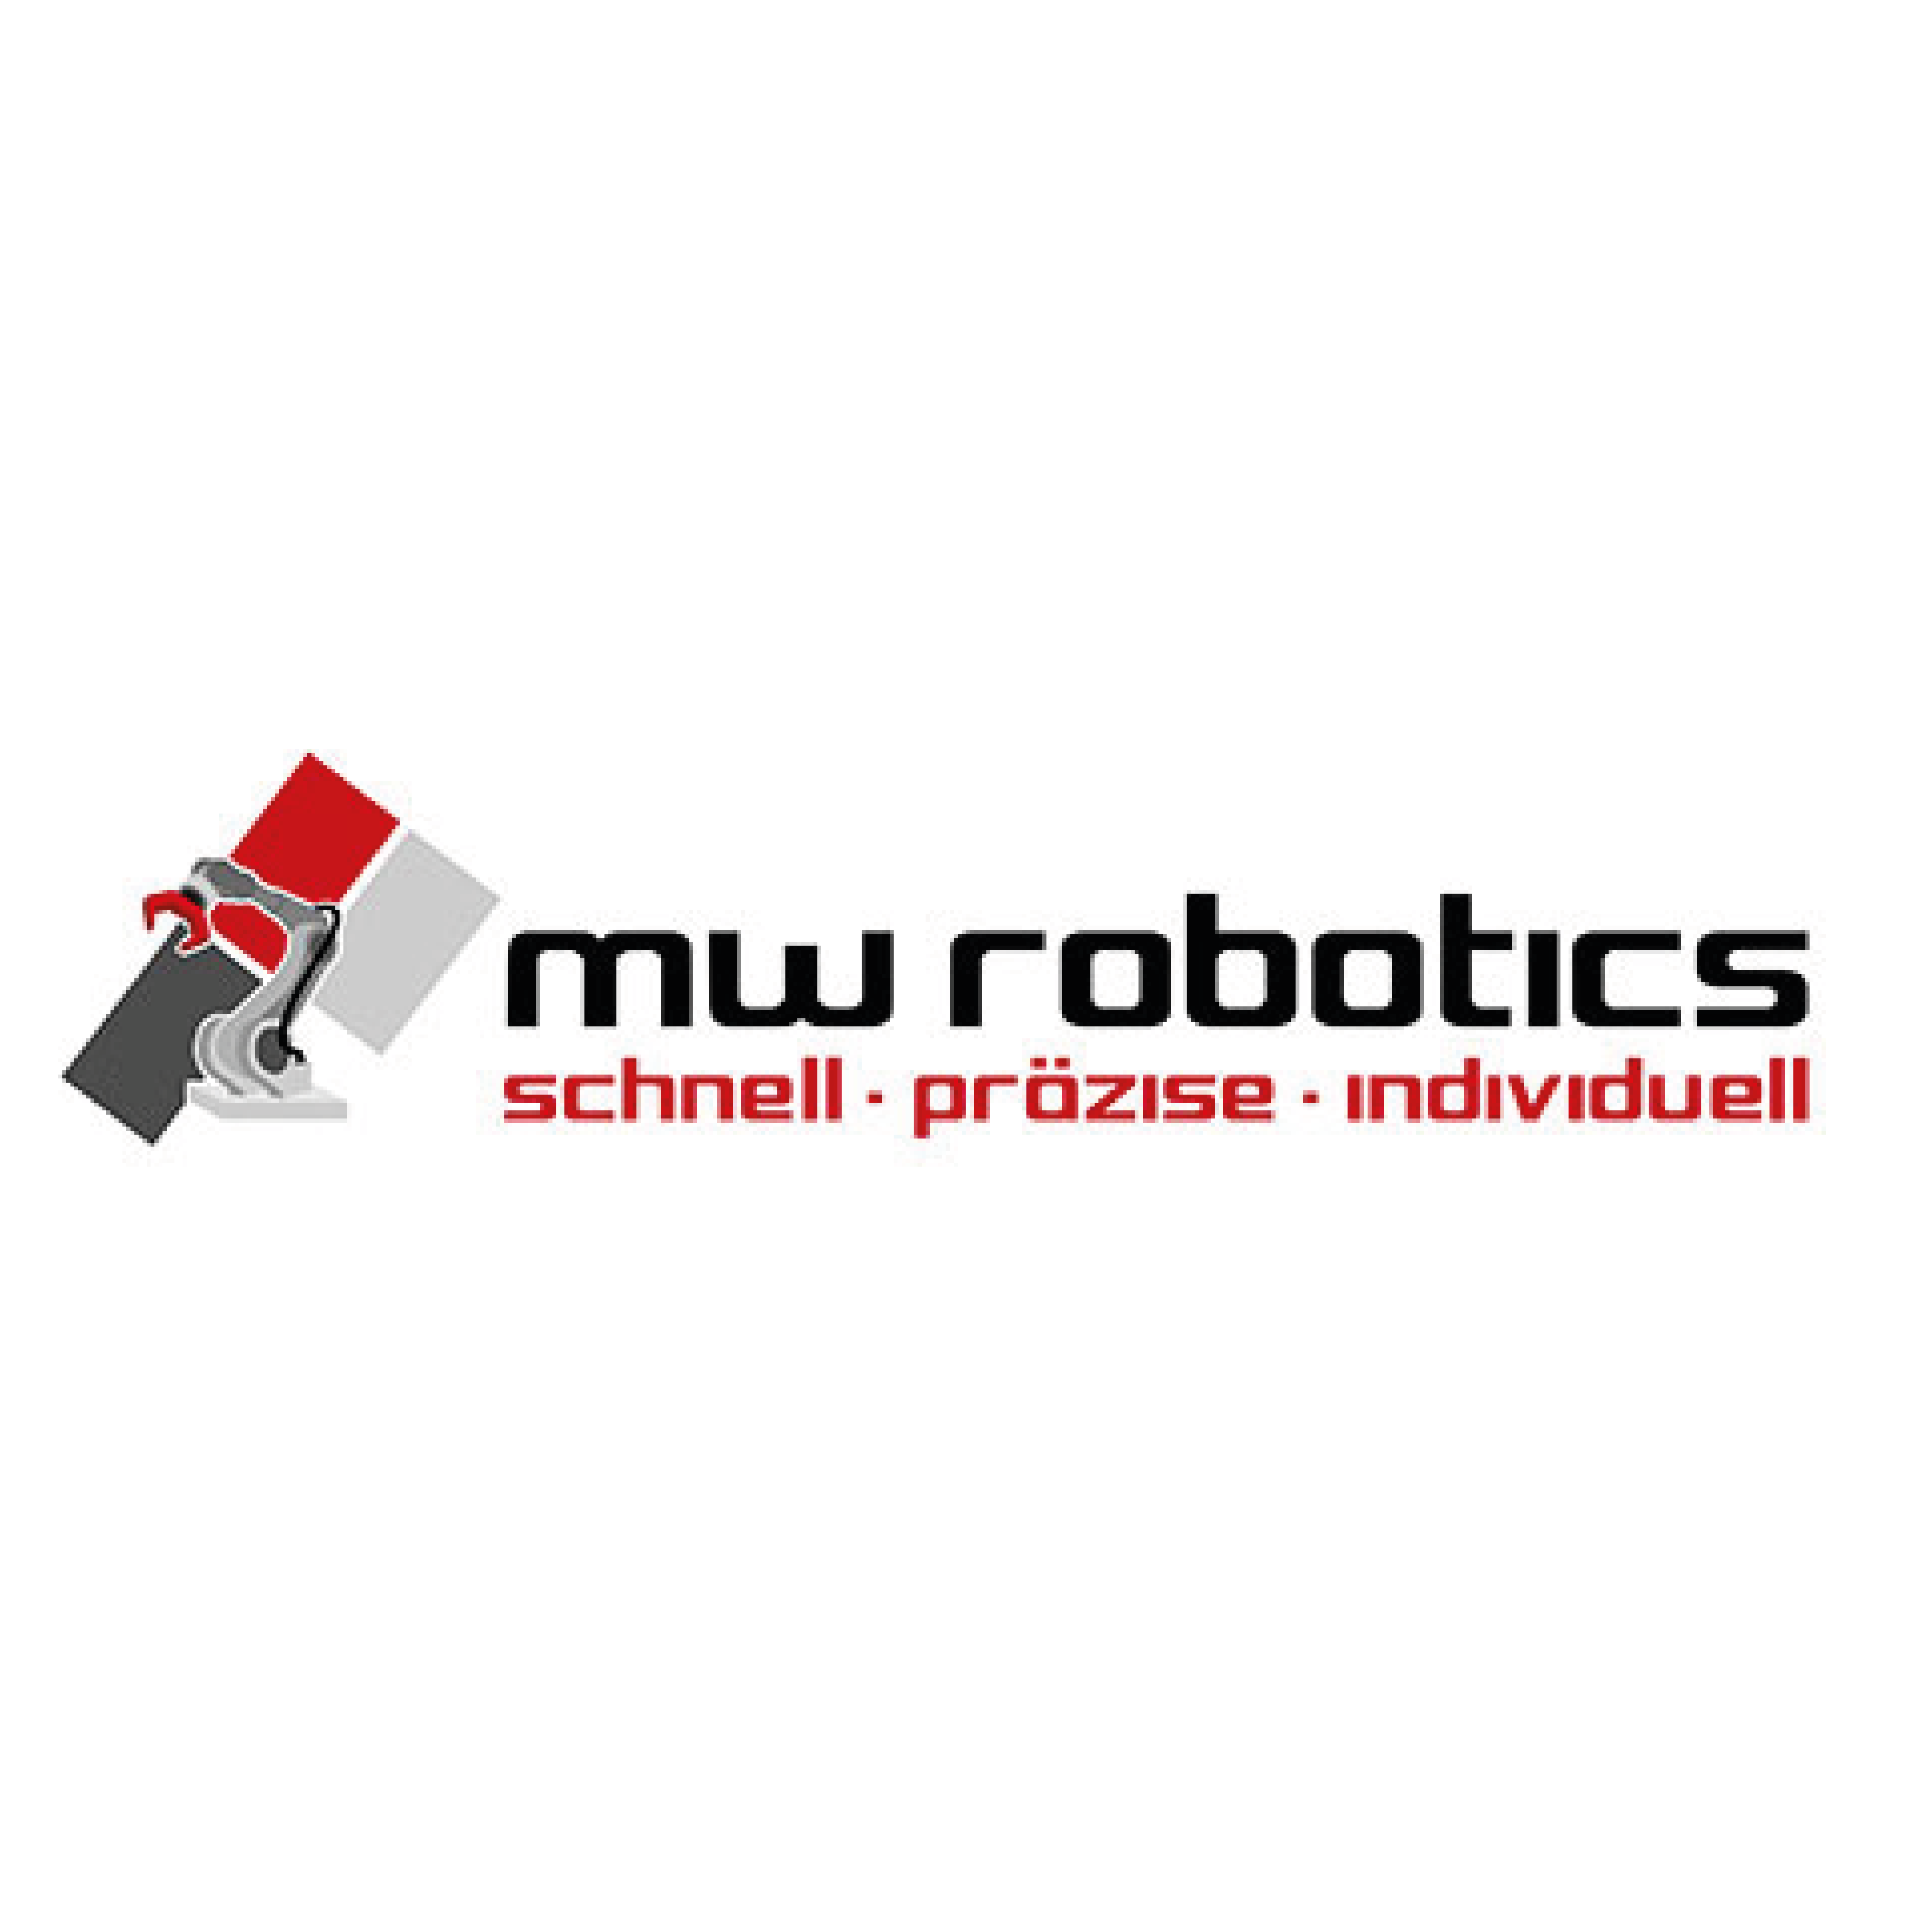 Logo "mw robotics"